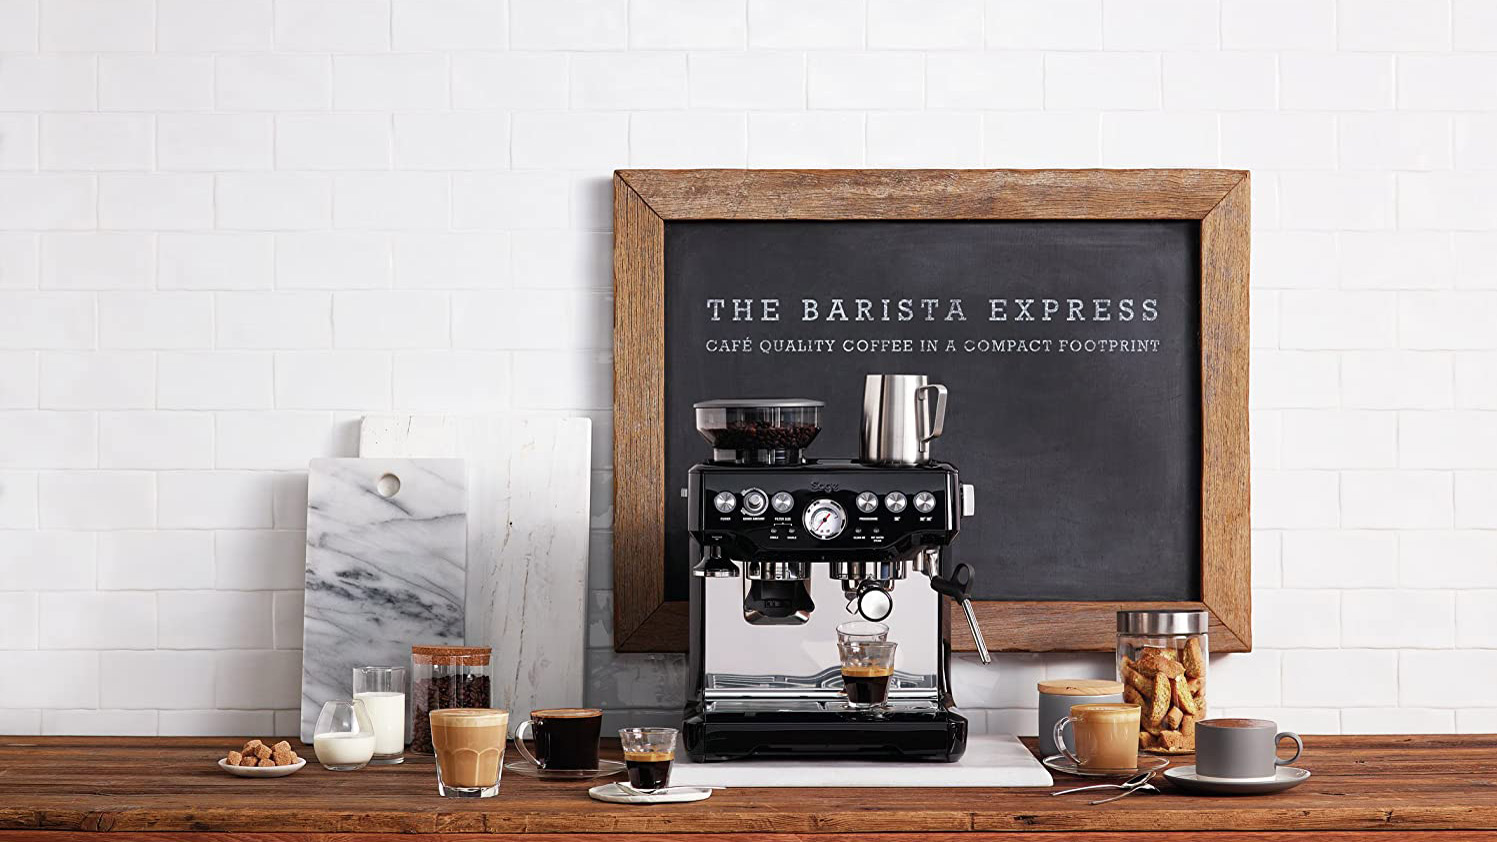 The Sage Barista Express Espresso Machine